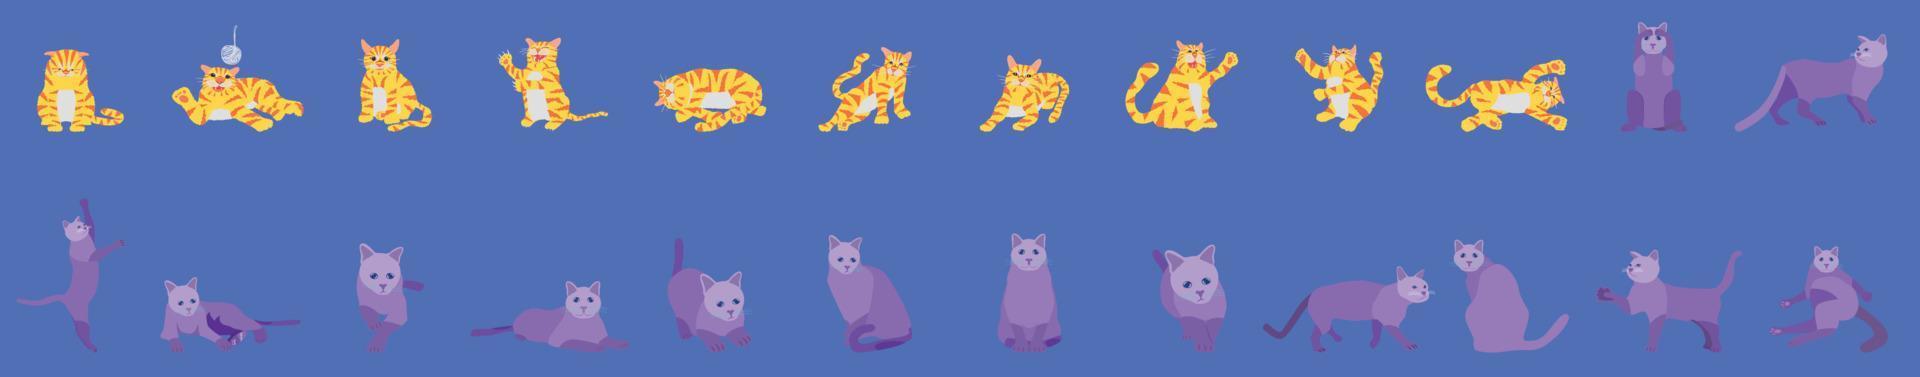 uppsättning av söt katt annorlunda utgör djur. vektor illustration eps10